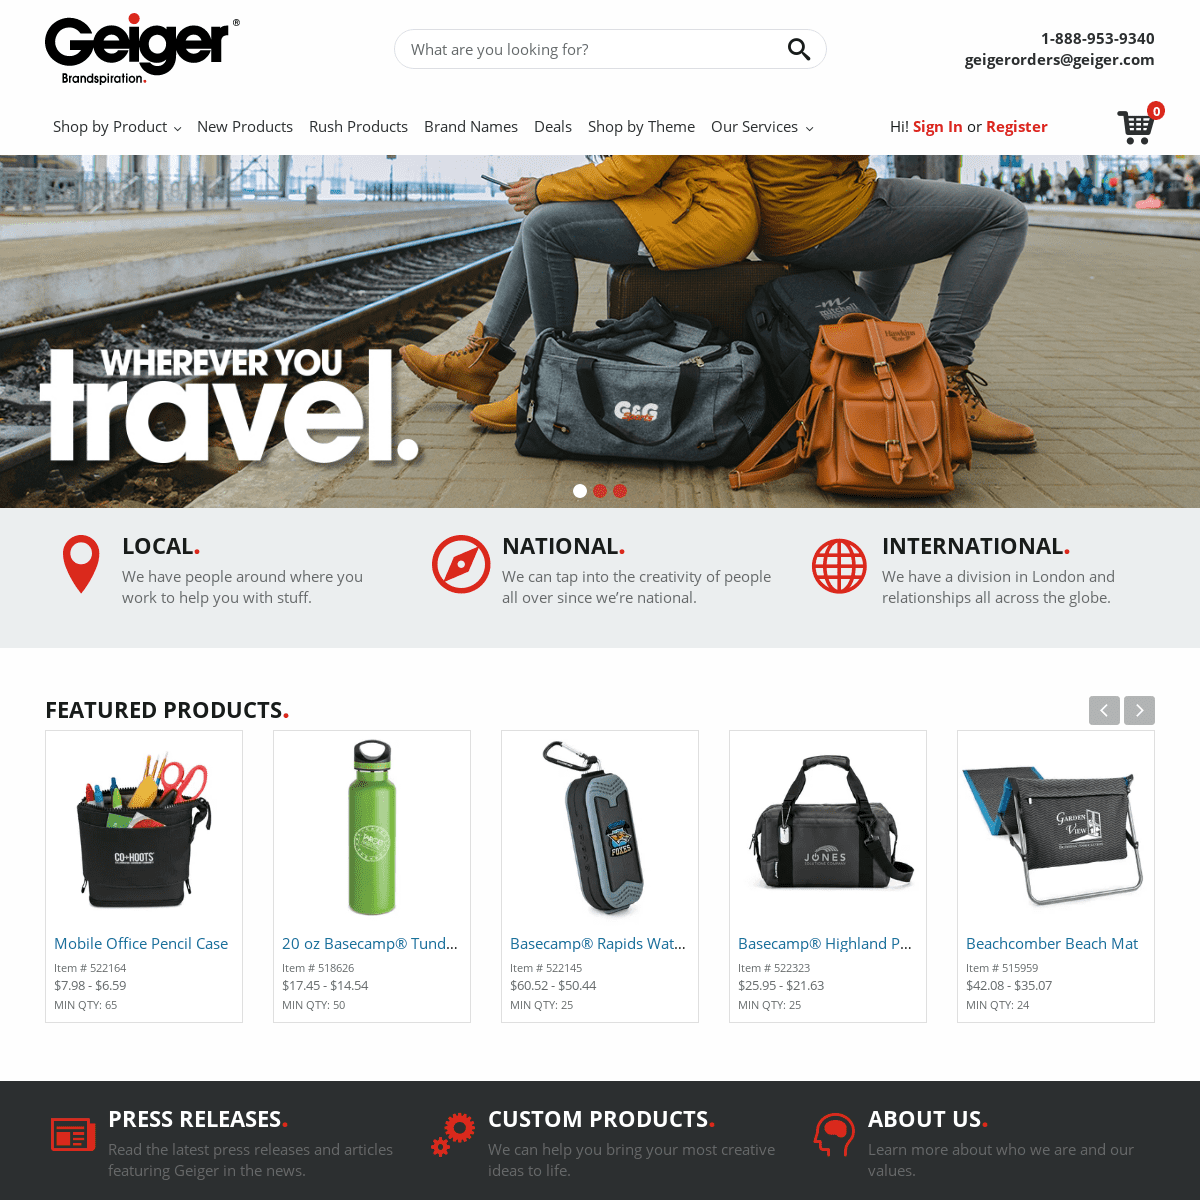 Geiger.com